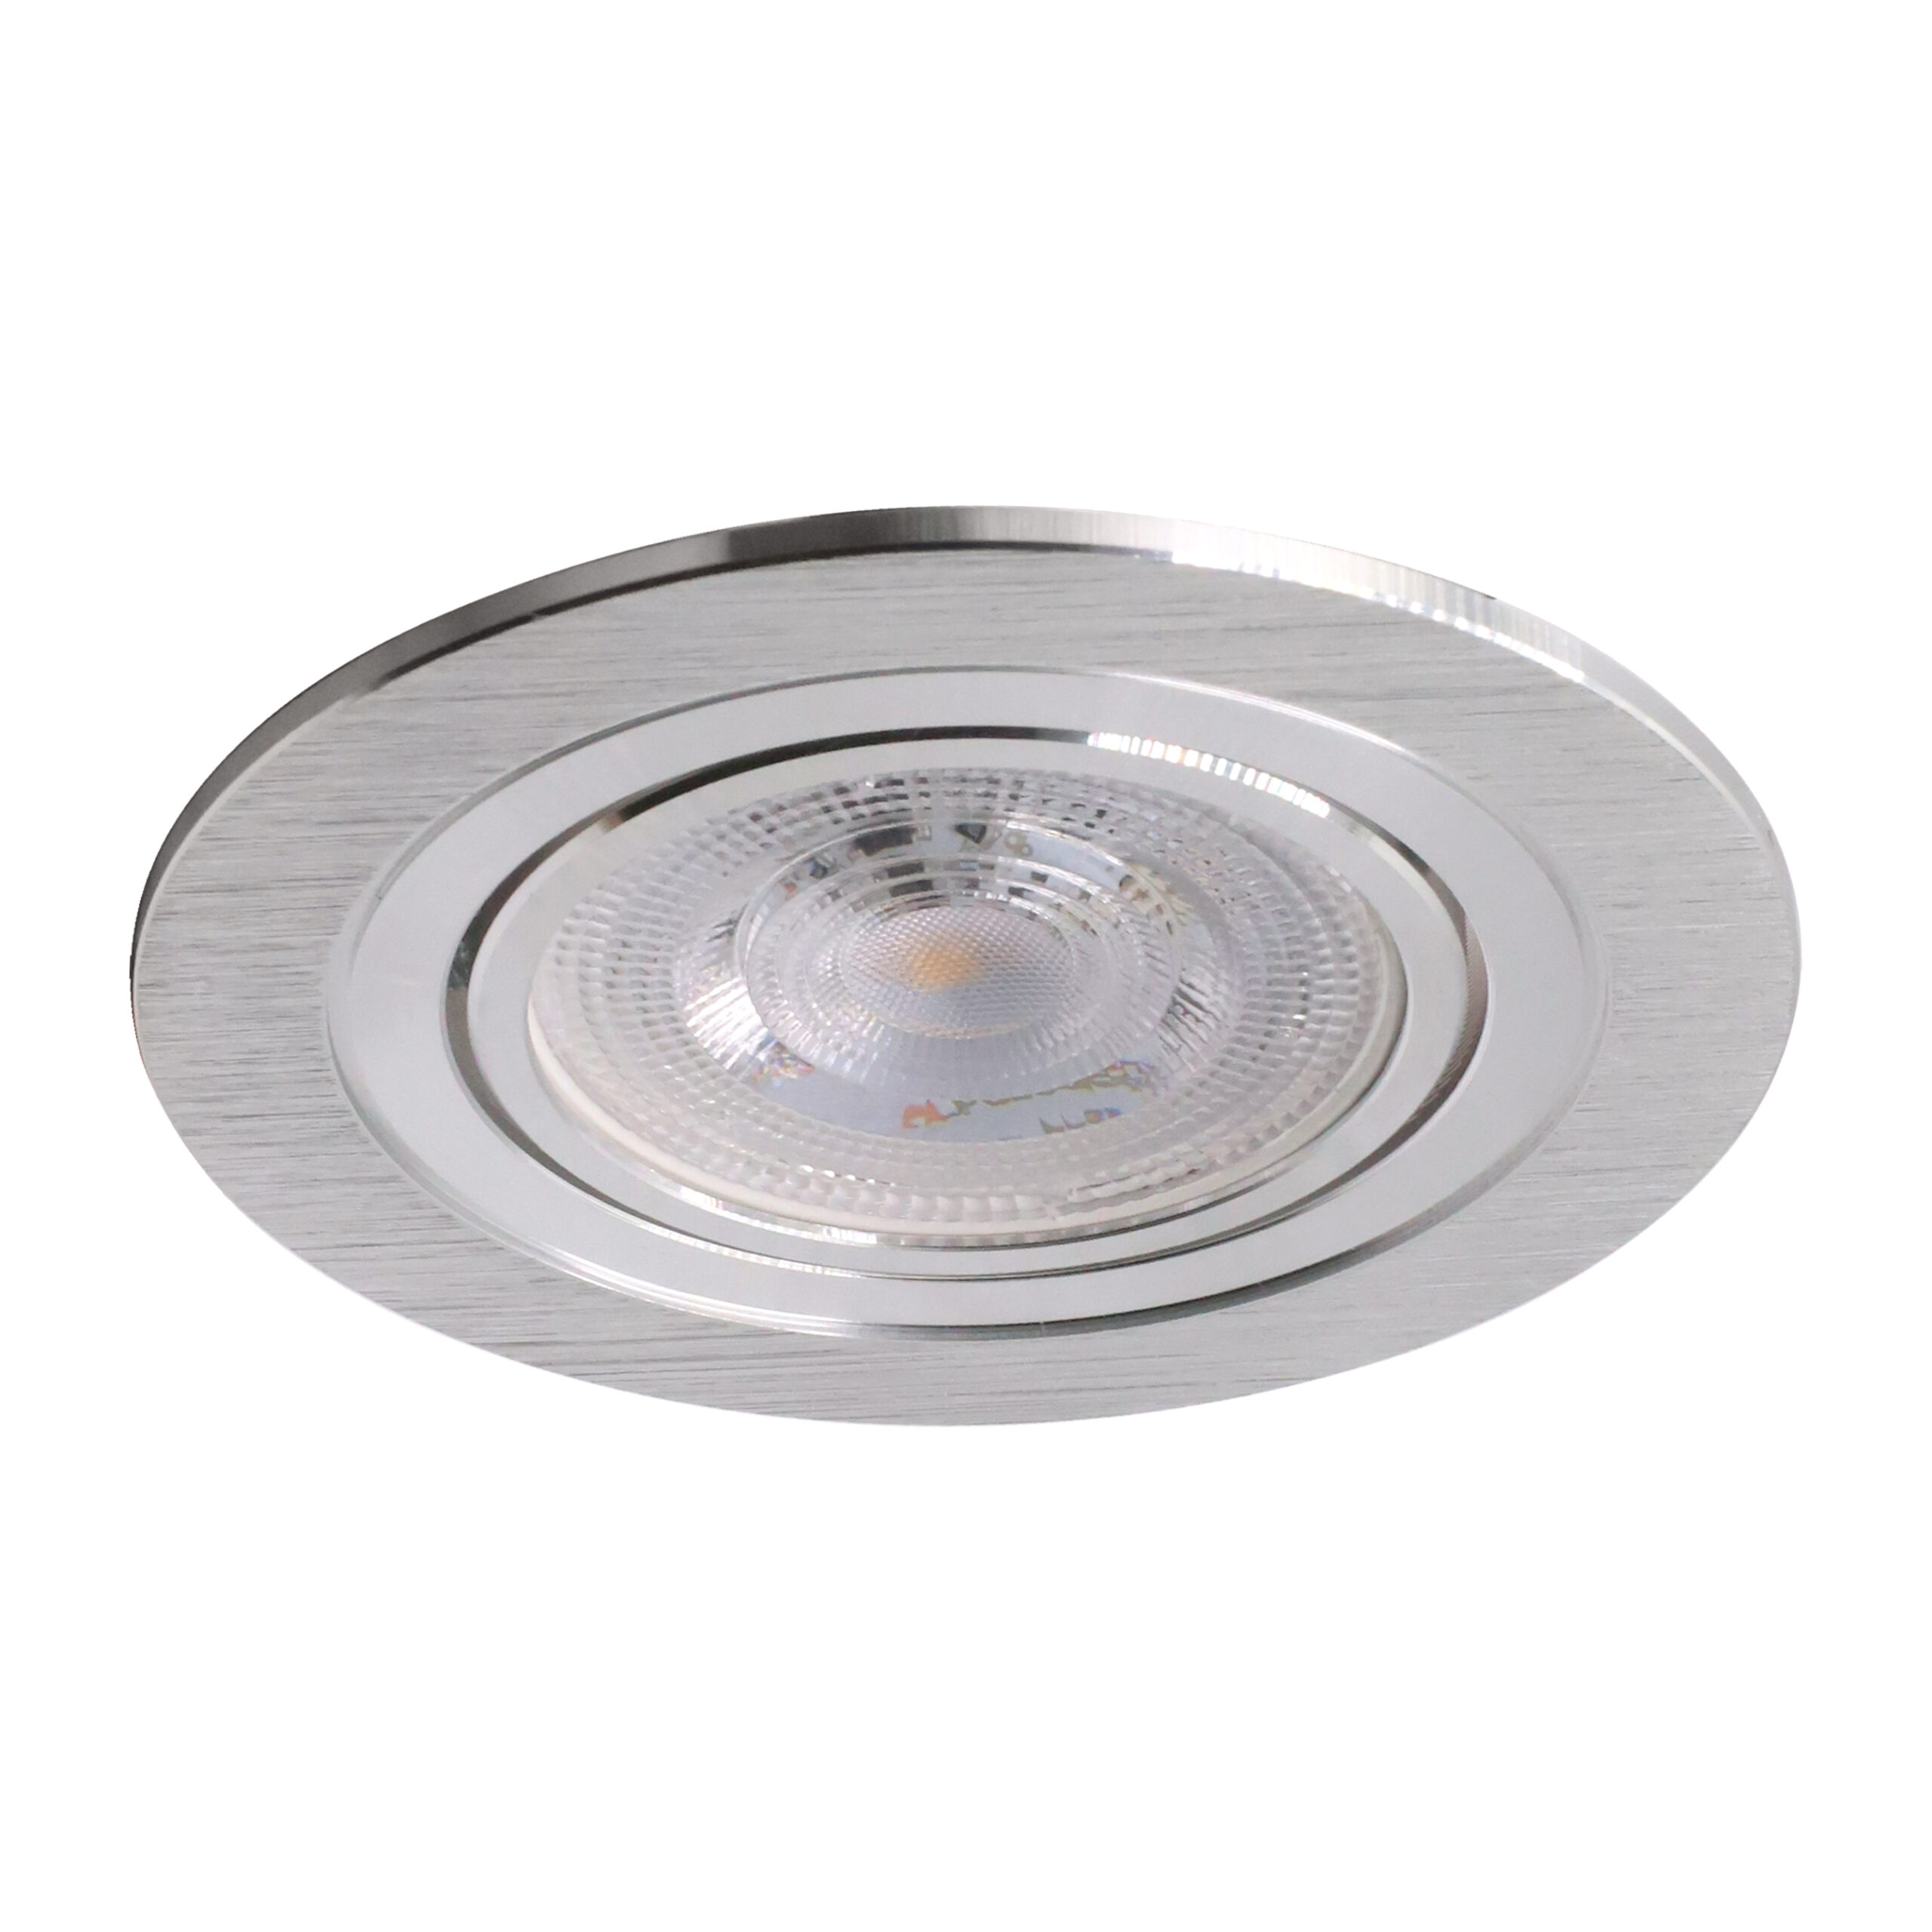 LED GU10 Doppel Einbauspot Spotlight Einbaurahmen Aluminium 360° schwenkbar 